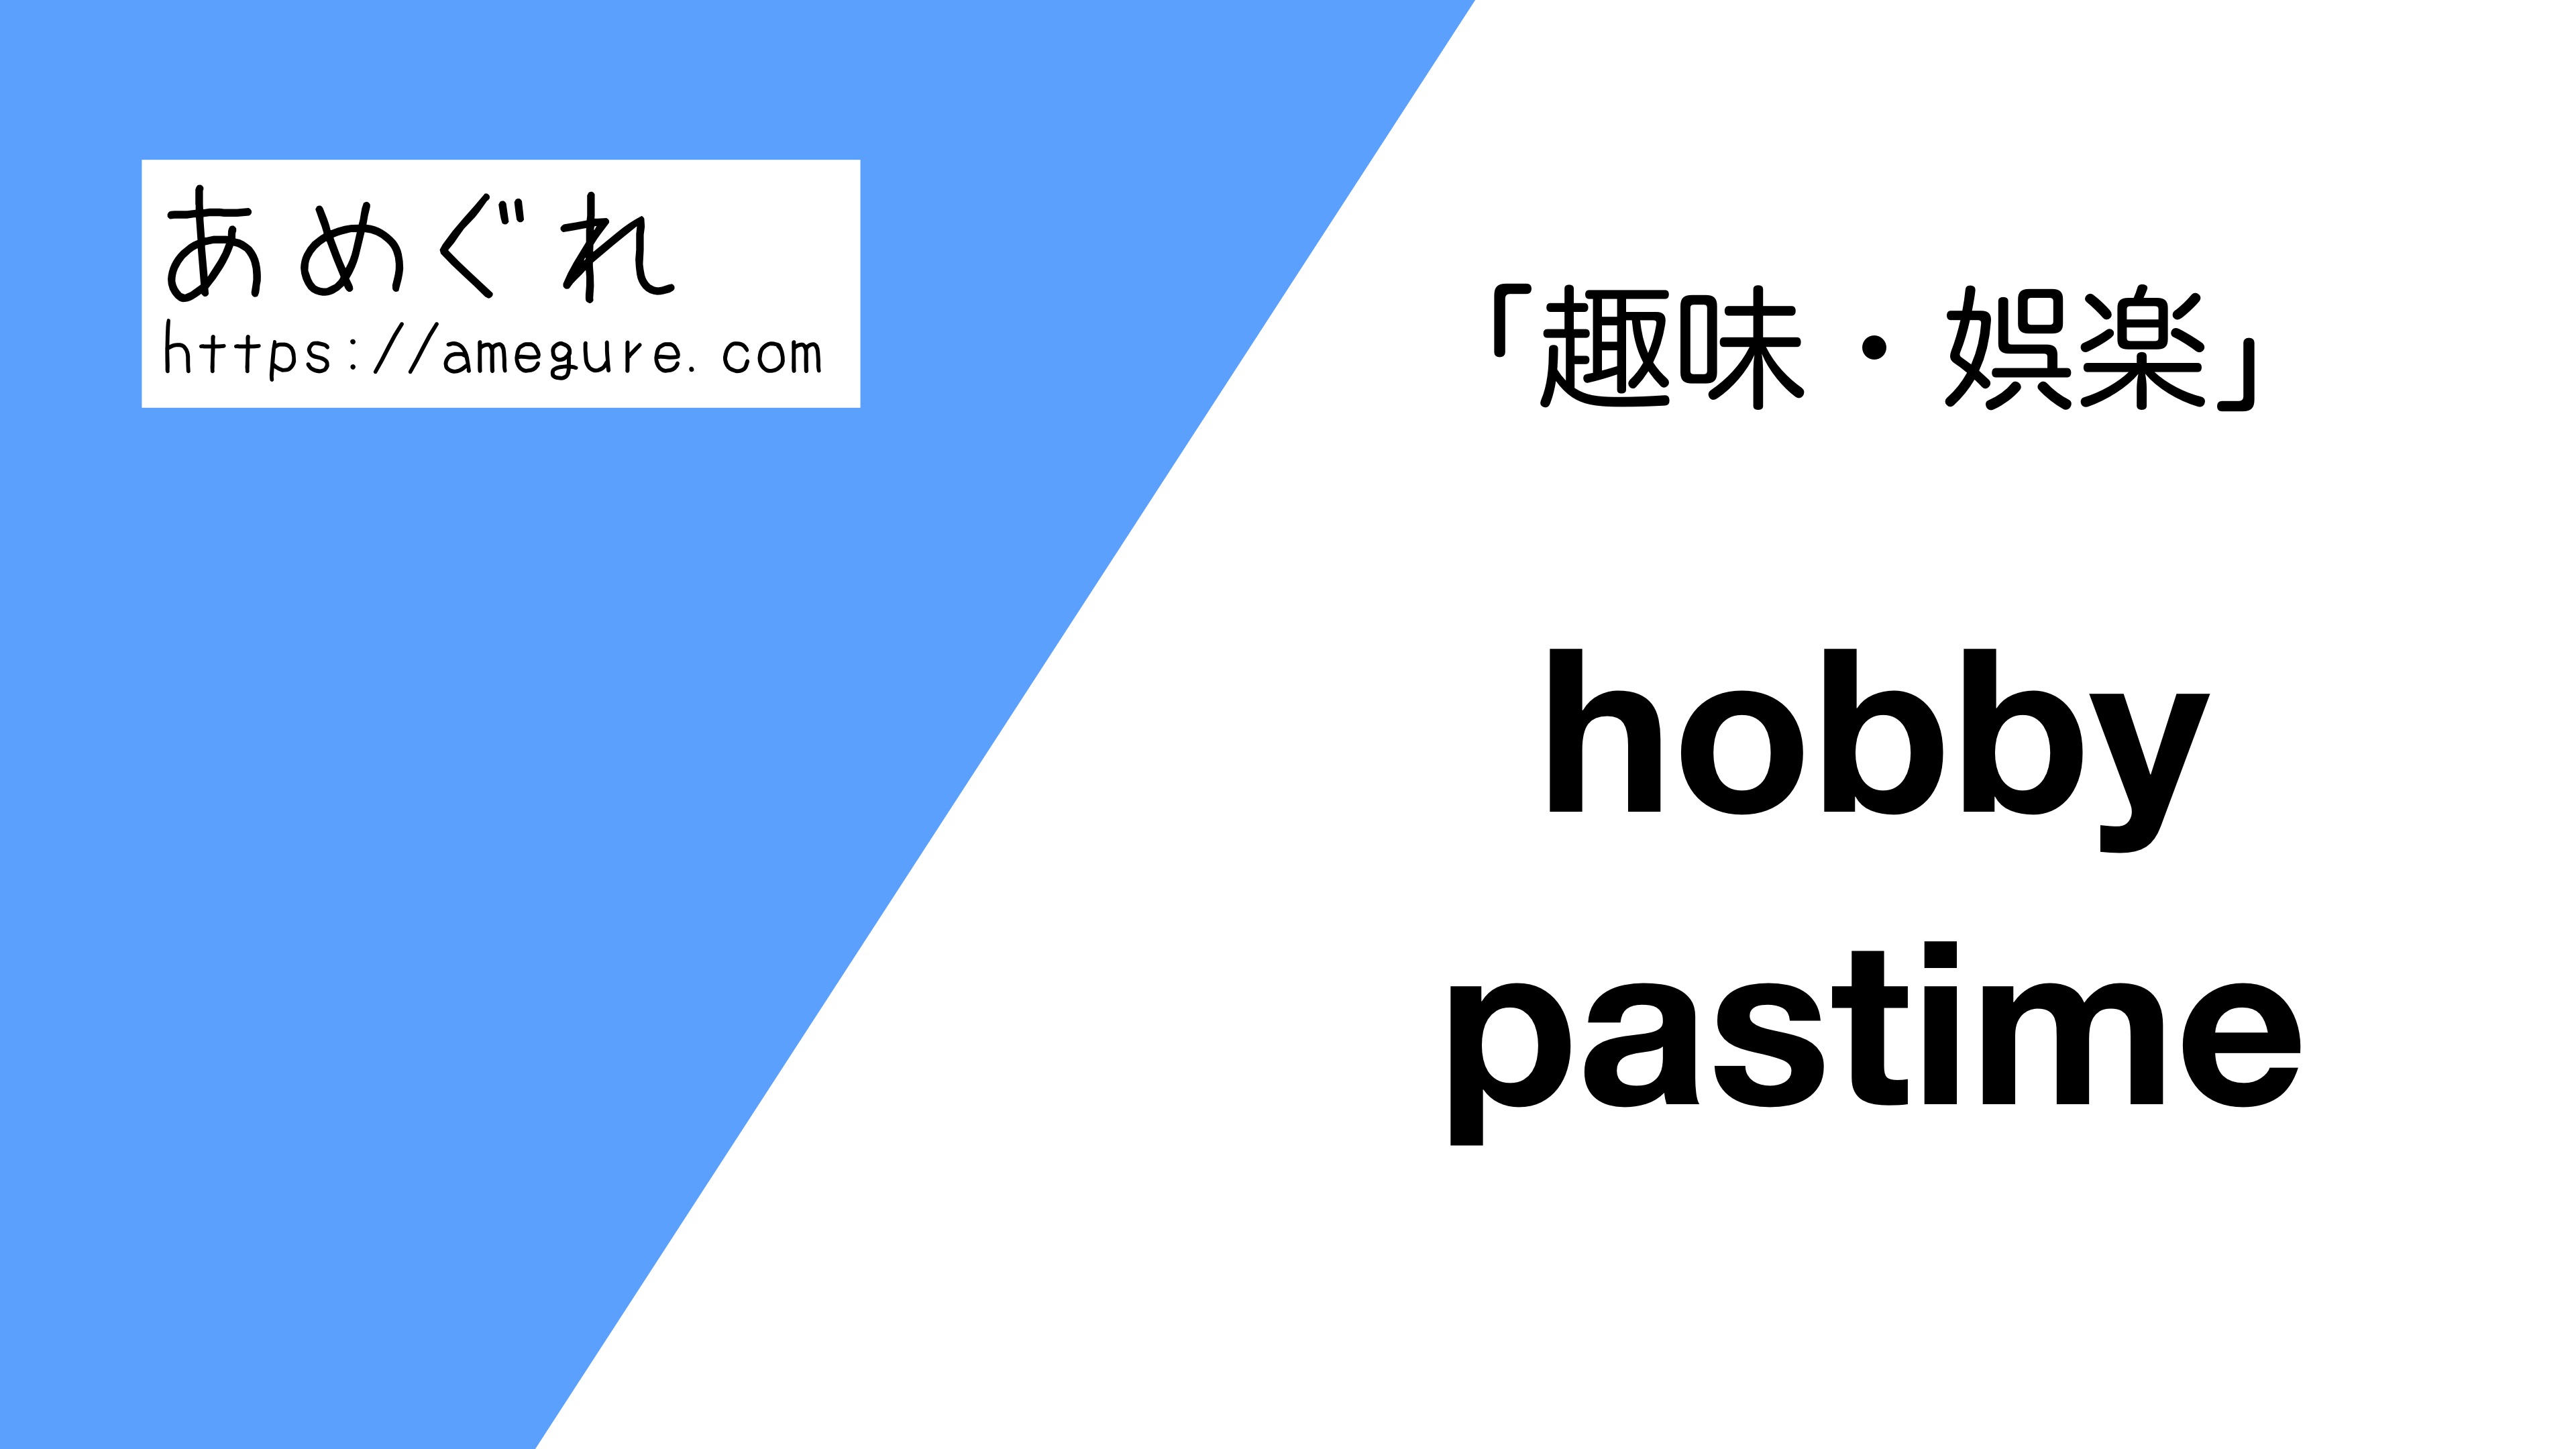 英語 Hobby Pastime 趣味 娯楽 の意味の違いと使い分け